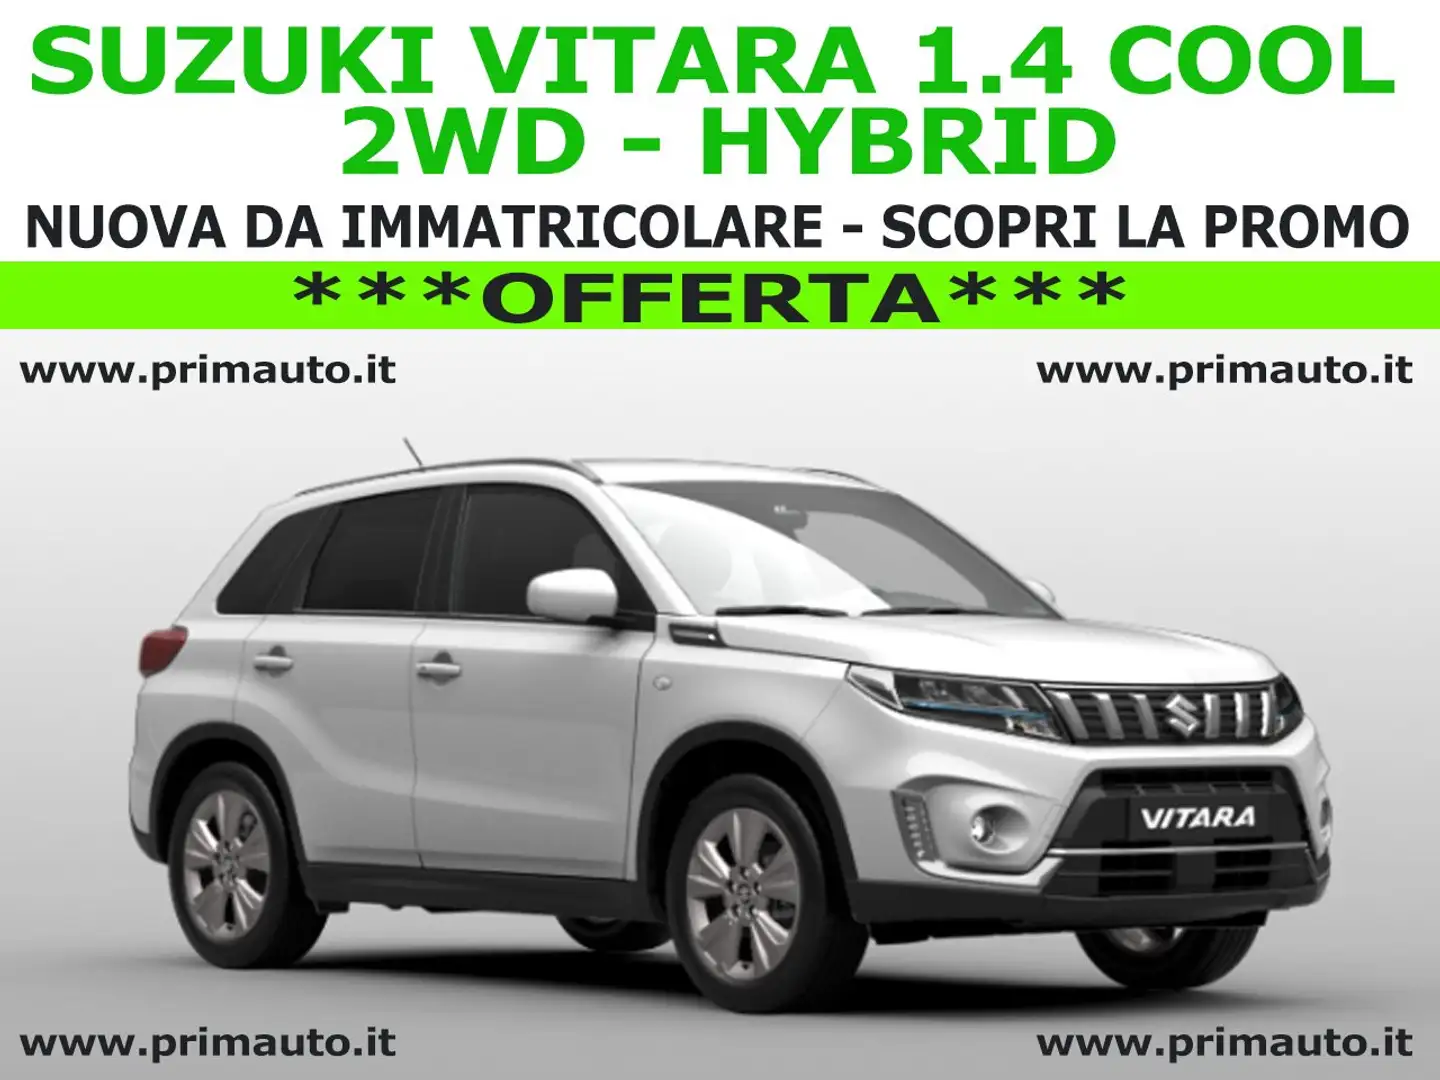 Suzuki Vitara 1.4 Hybrid Cool - OFFERTA - (#0524)...SCOPRILA! Bianco - 1